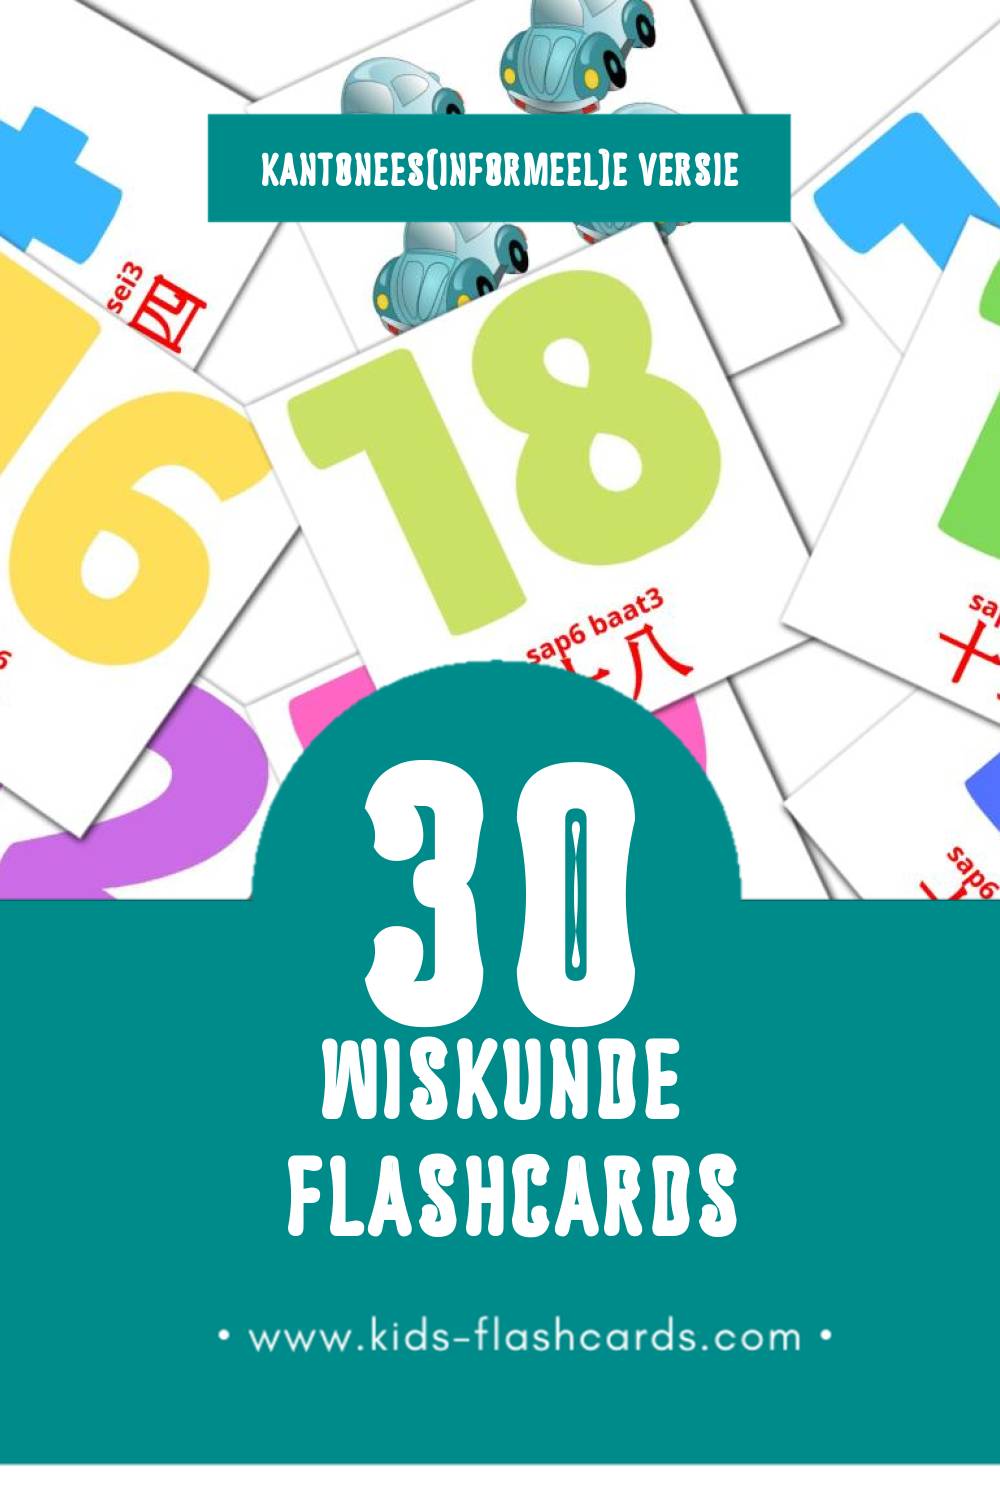 Visuele 數字 sou3 zi6 Flashcards voor Kleuters (30 kaarten in het Kantonees(informeel))